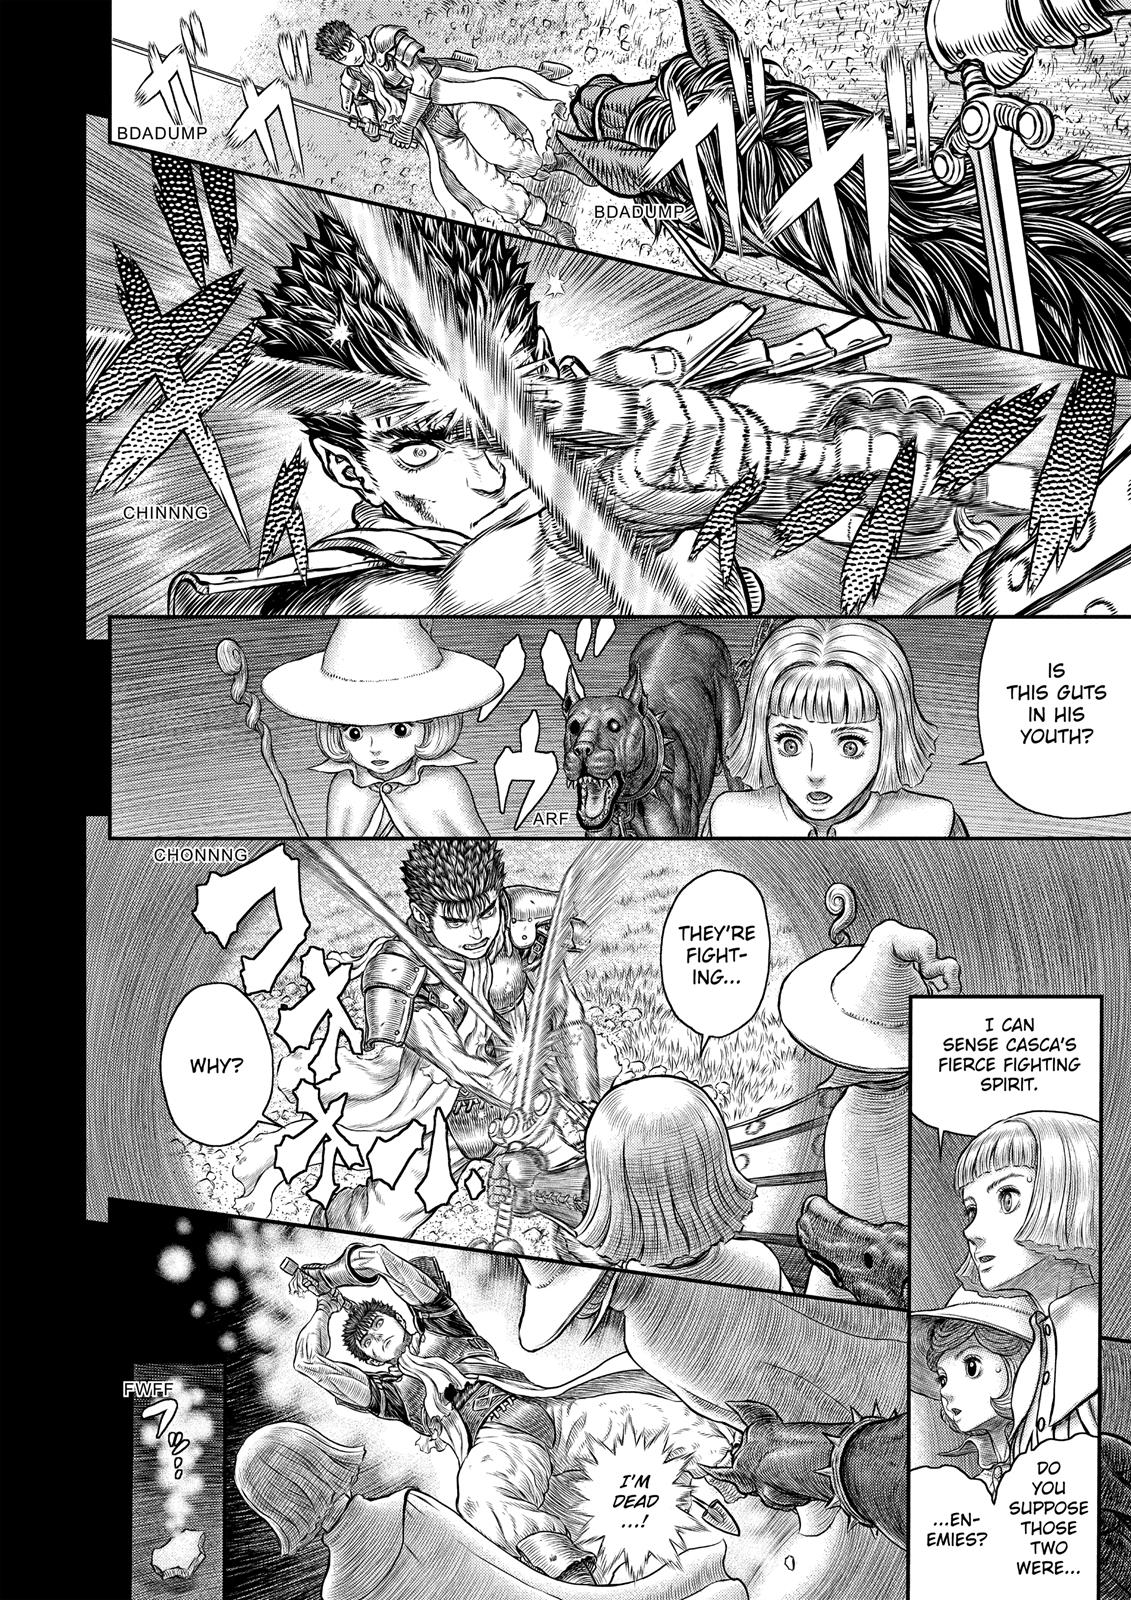 Berserk Manga Chapter 350 image 03